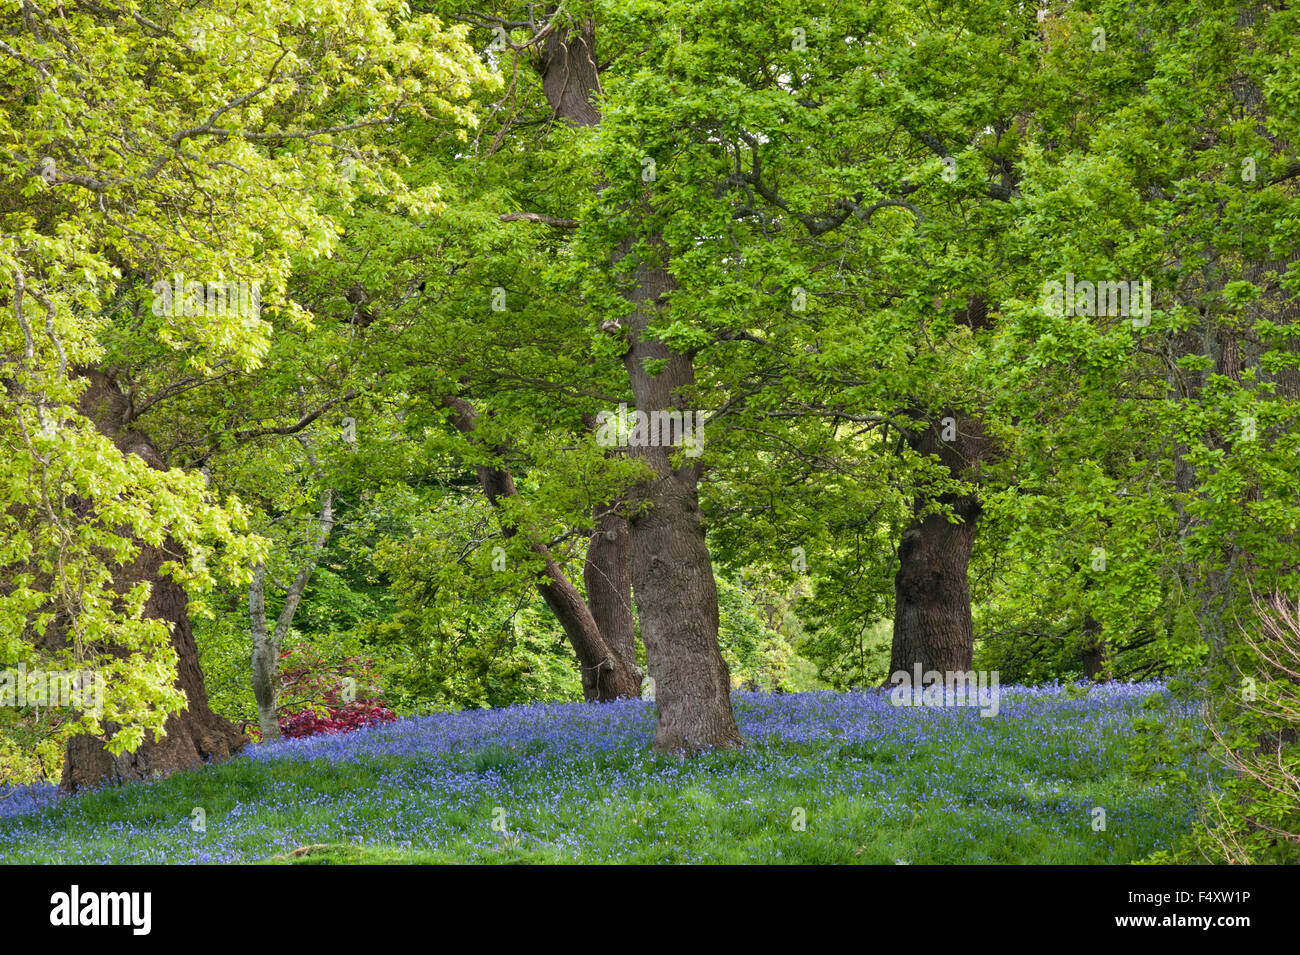 Jardin de Bodnant, Conwy, Pays de Galles, Royaume-Uni. Jacinthes dans les bois à la fin du printemps Banque D'Images